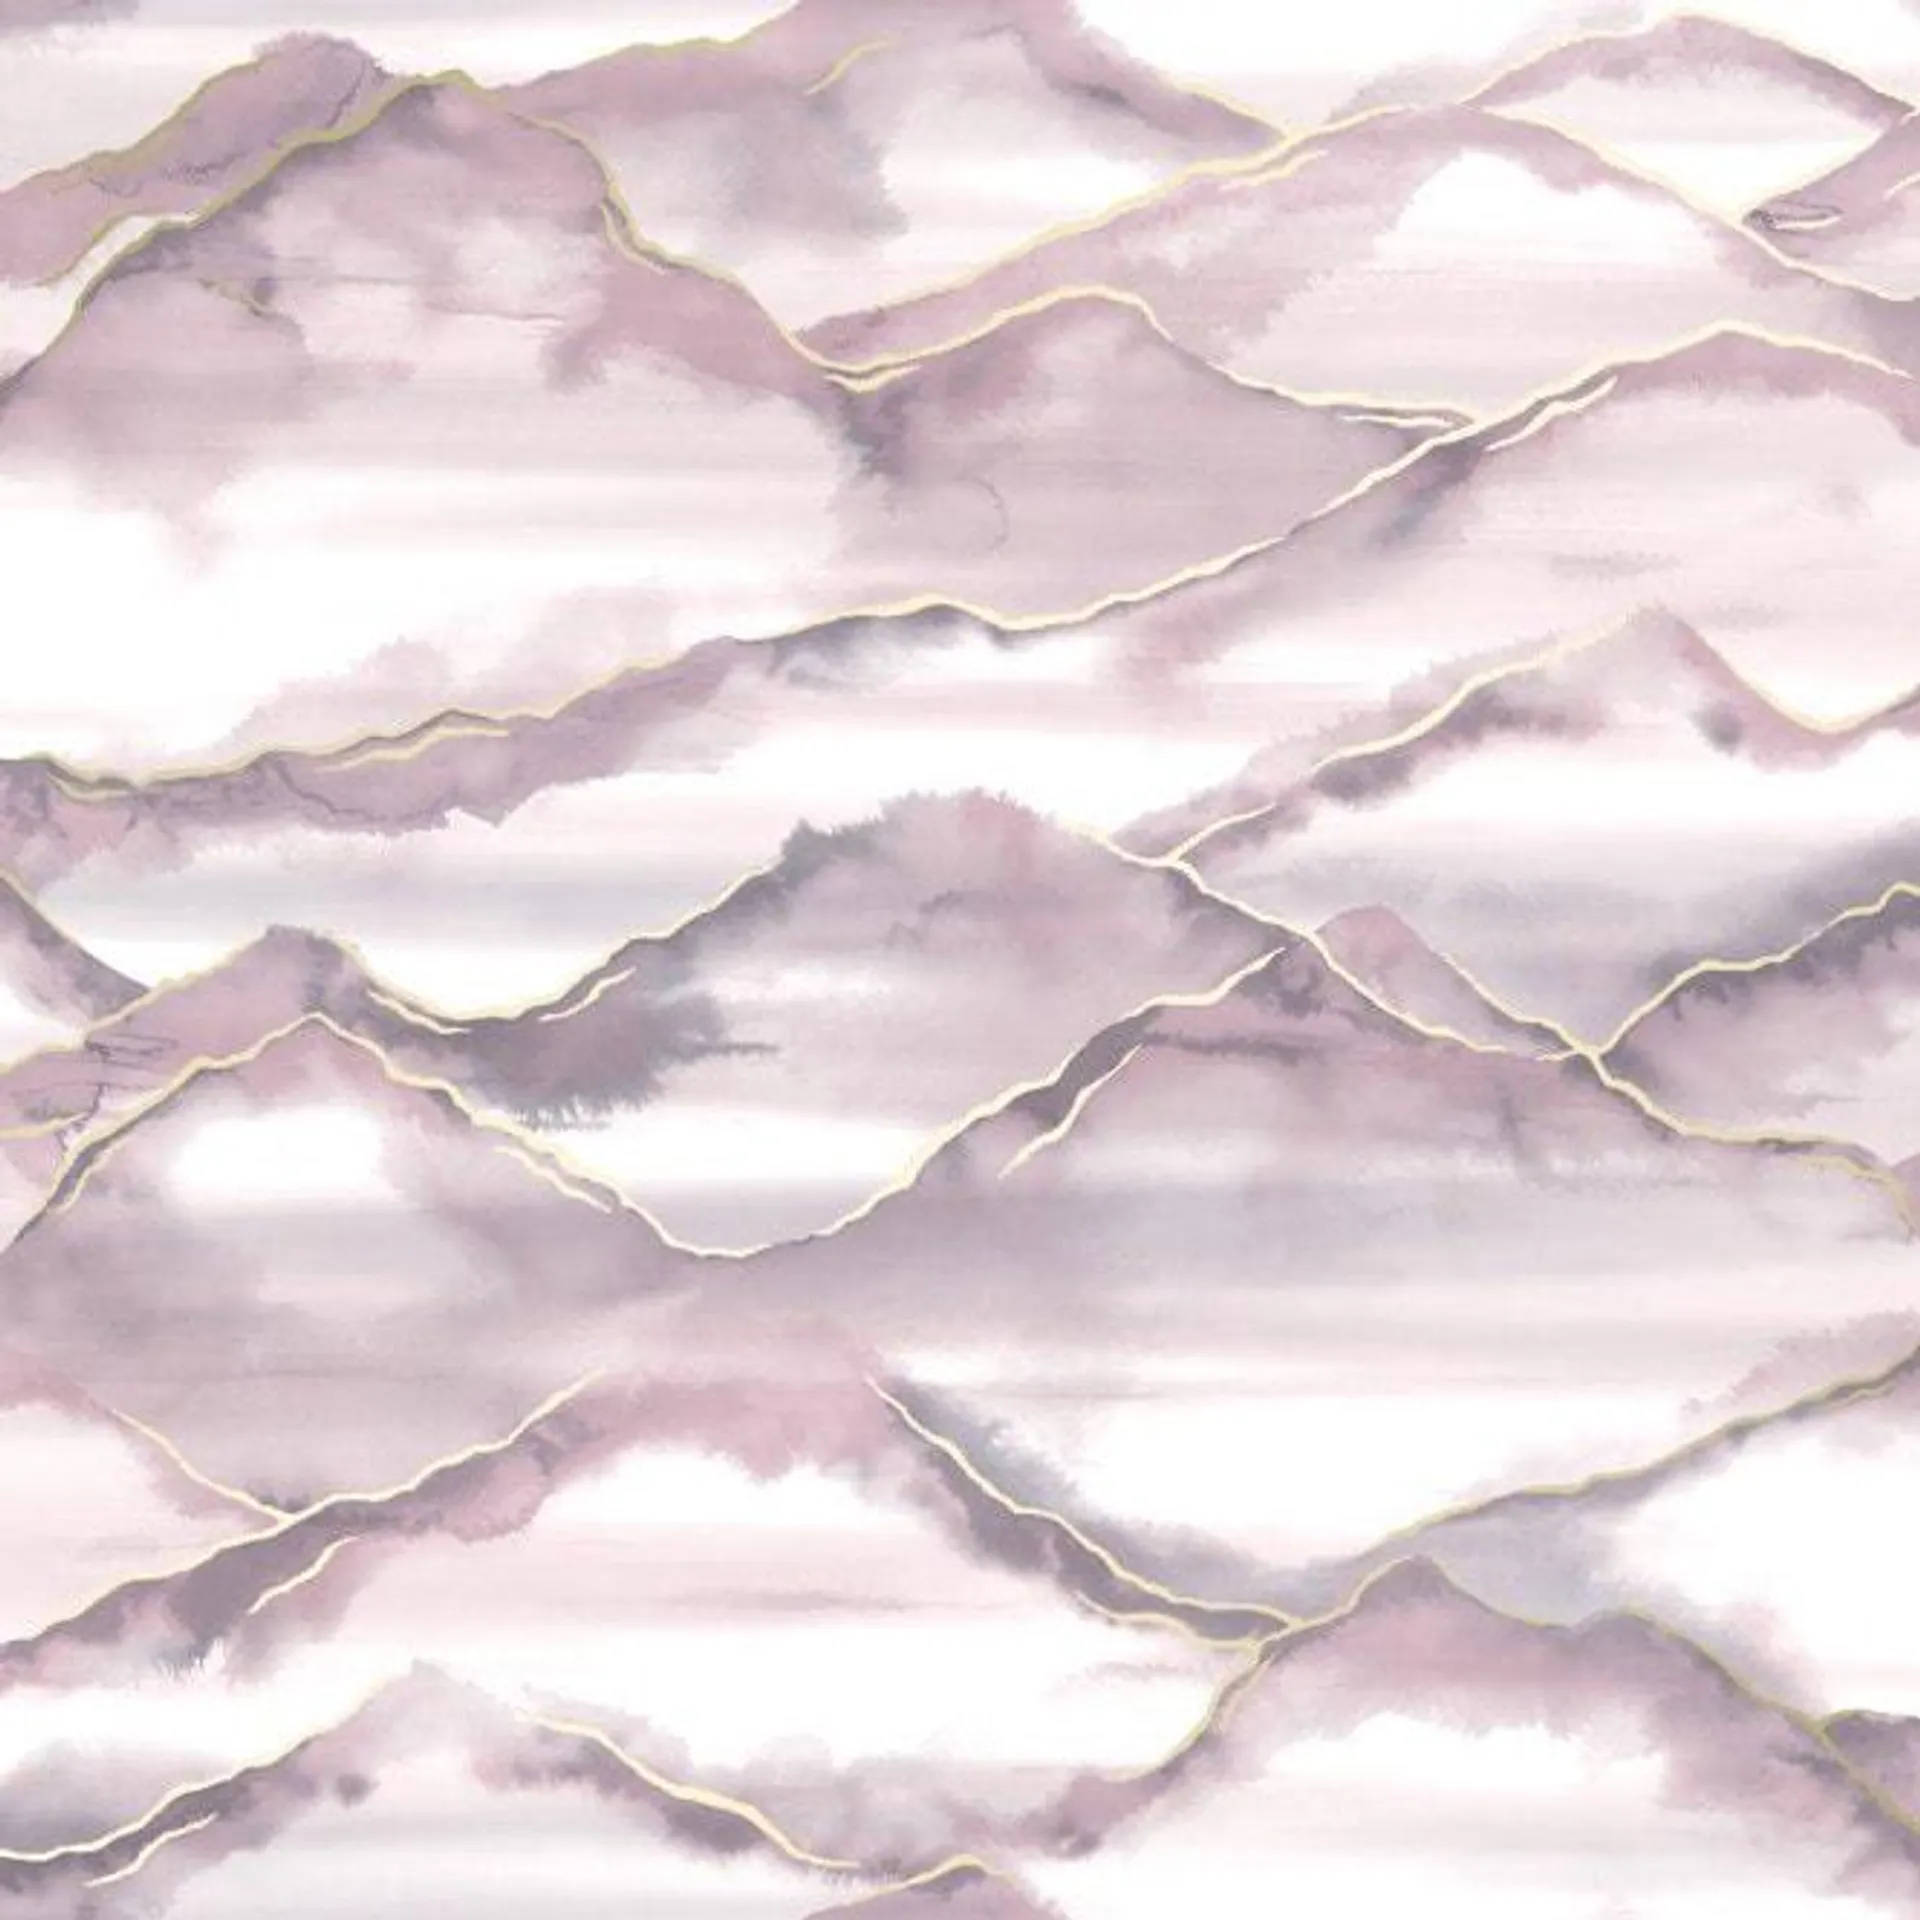 Zen Metallic wallpaper in pink